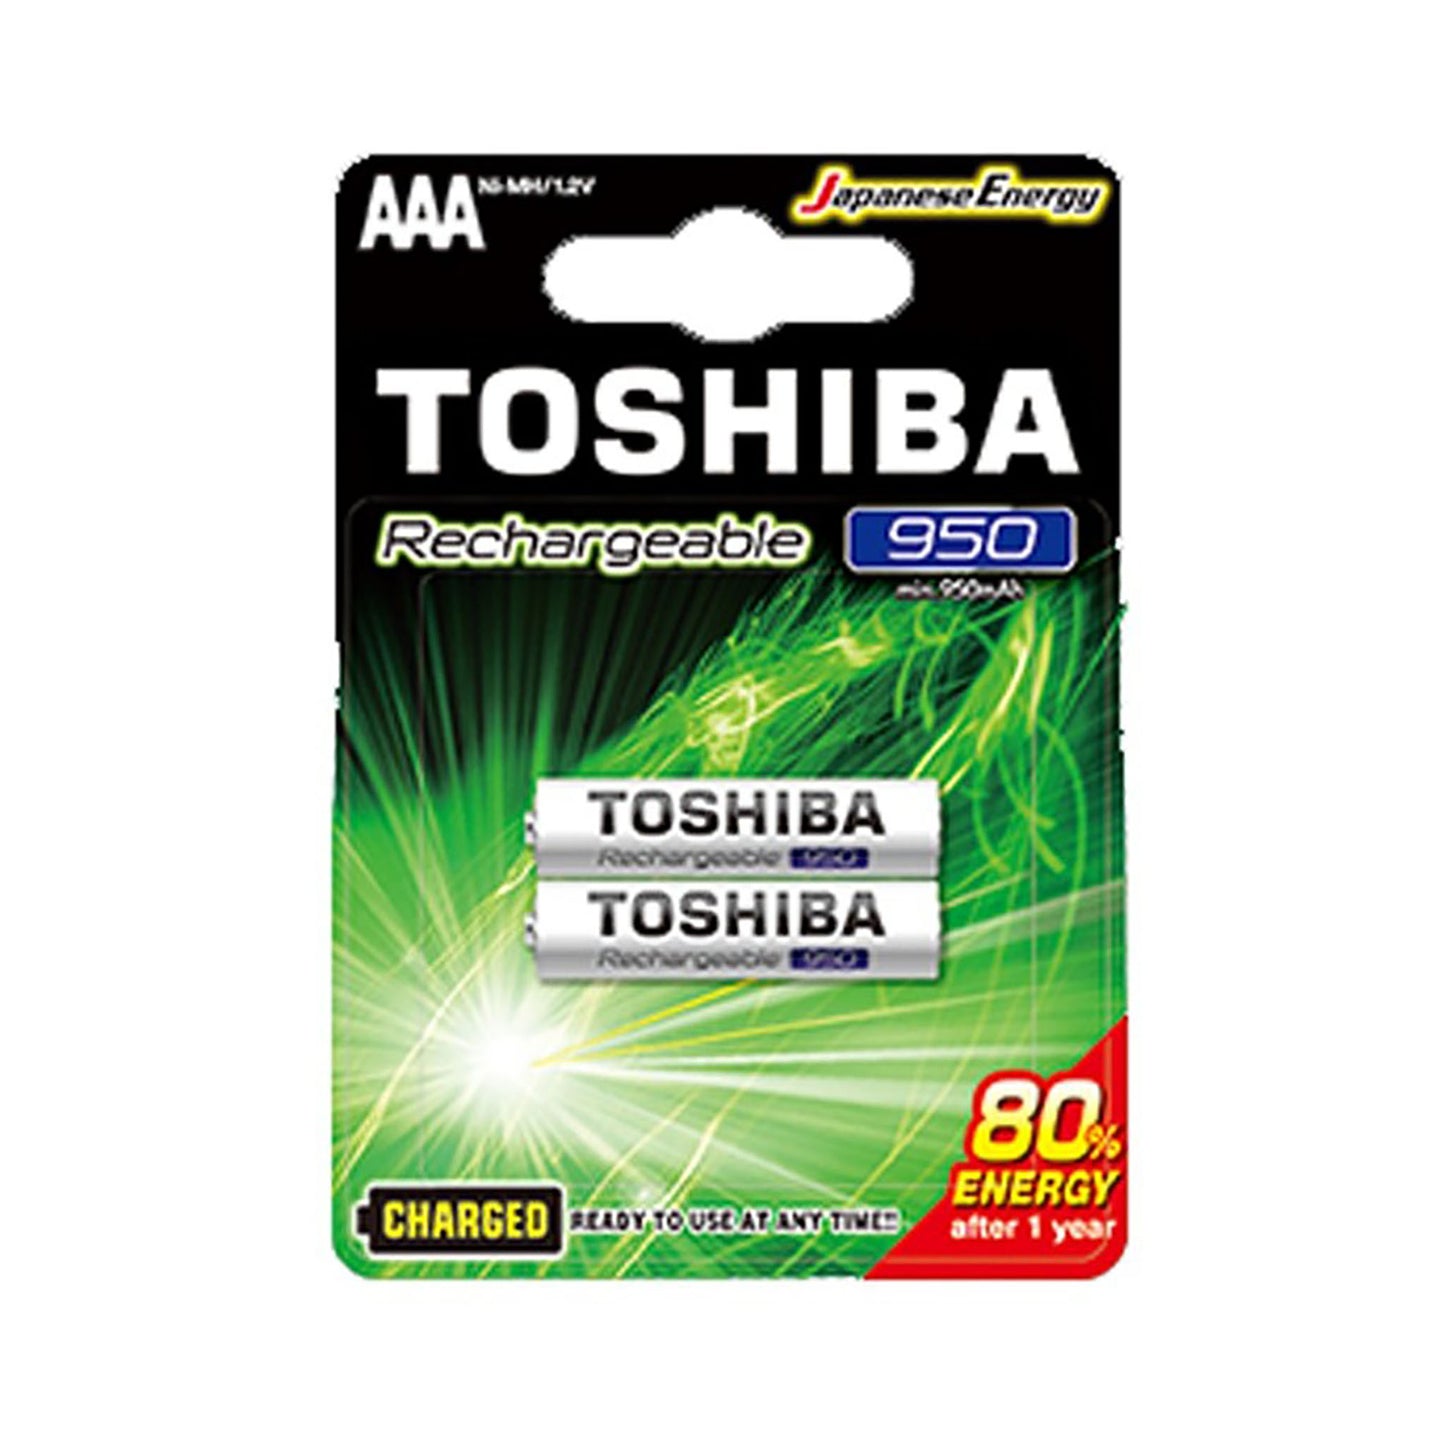 TSH-AAA-REC-950-2 - аккумуляторные батарейки Toshiba AAA, 950 мАч (2 шт. в блистере)